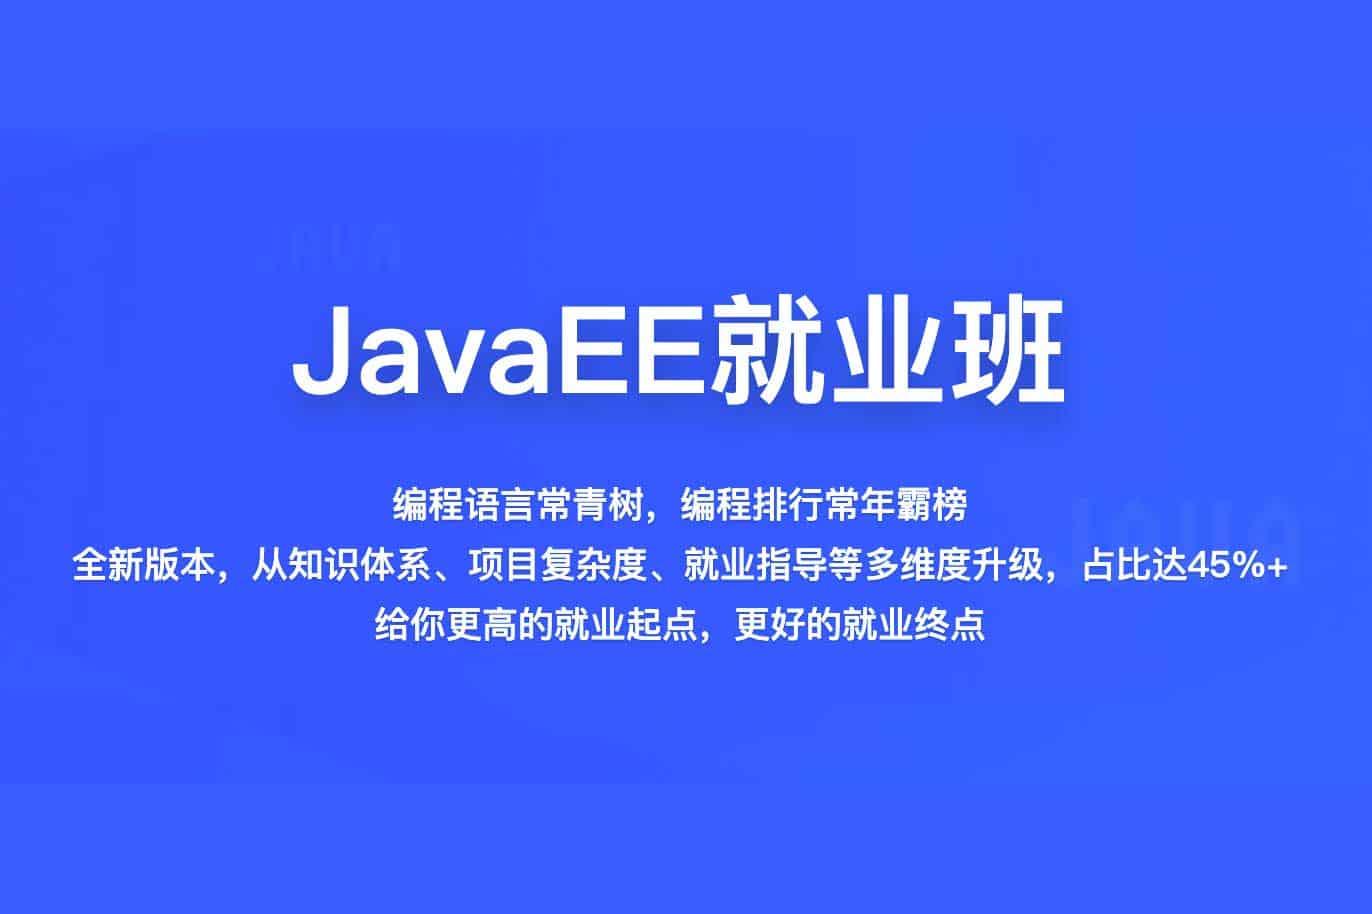 Java全系列视频教程 - 百战程序员